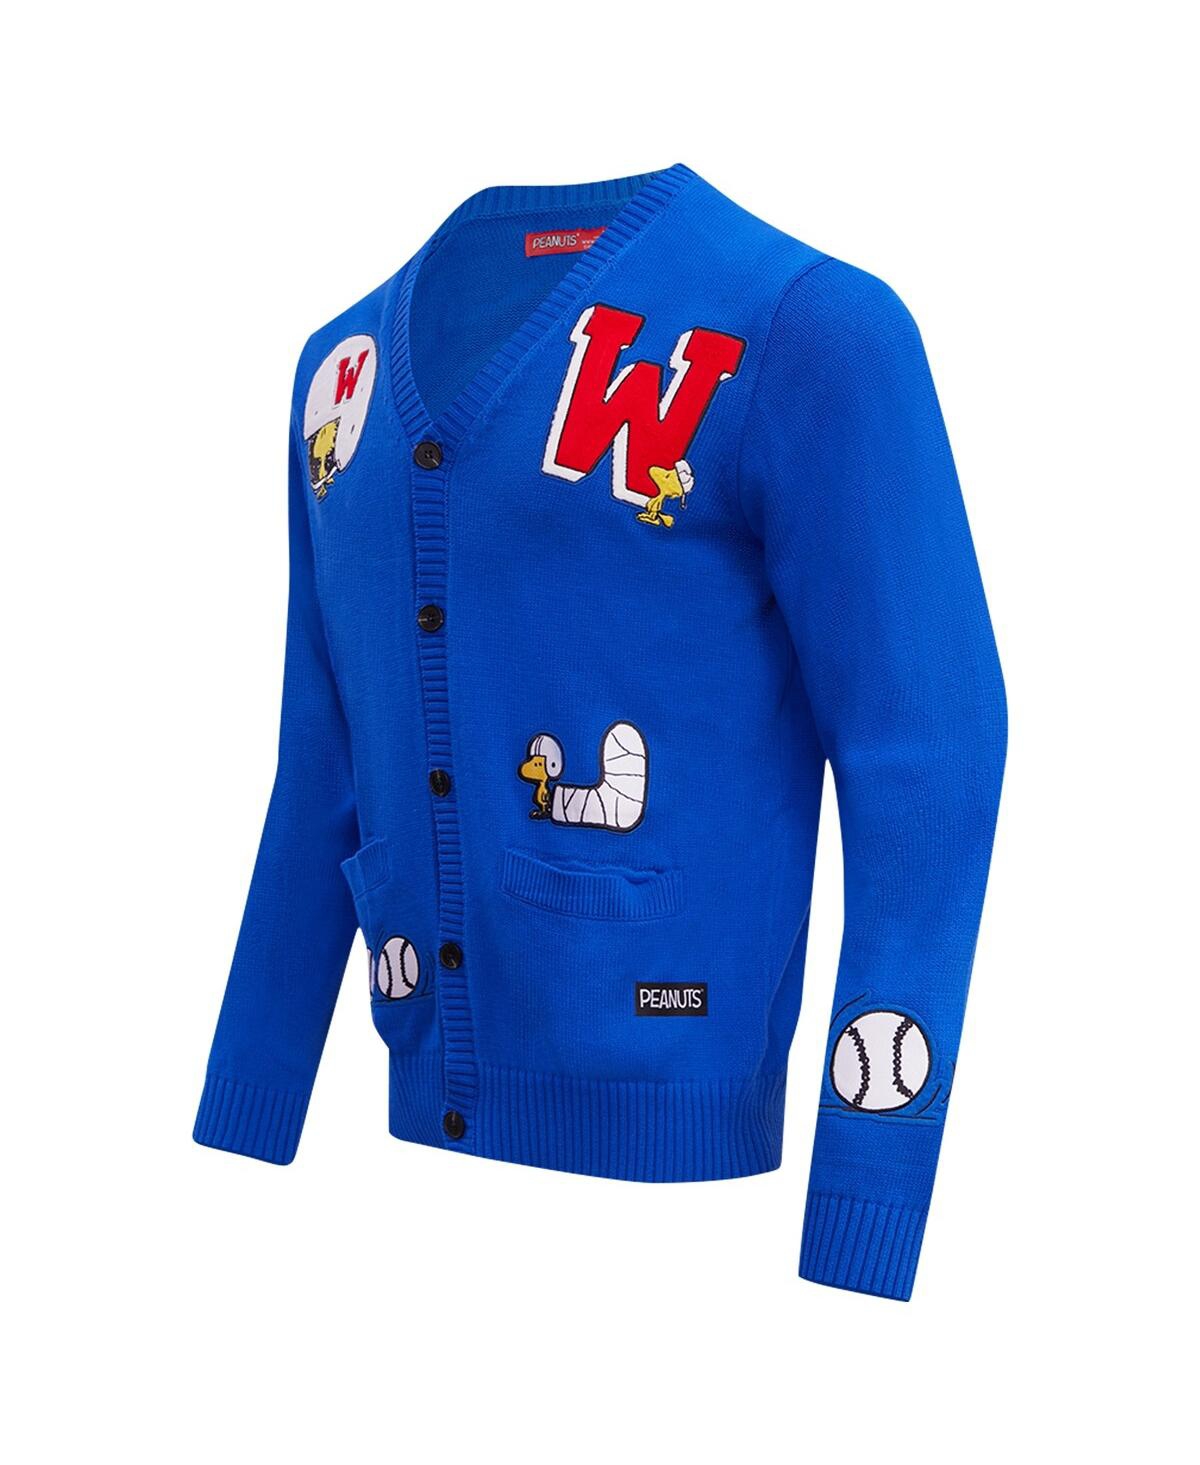 Shop Freeze Max Men's  Royal Peanuts Woodstock Sports Cardigan